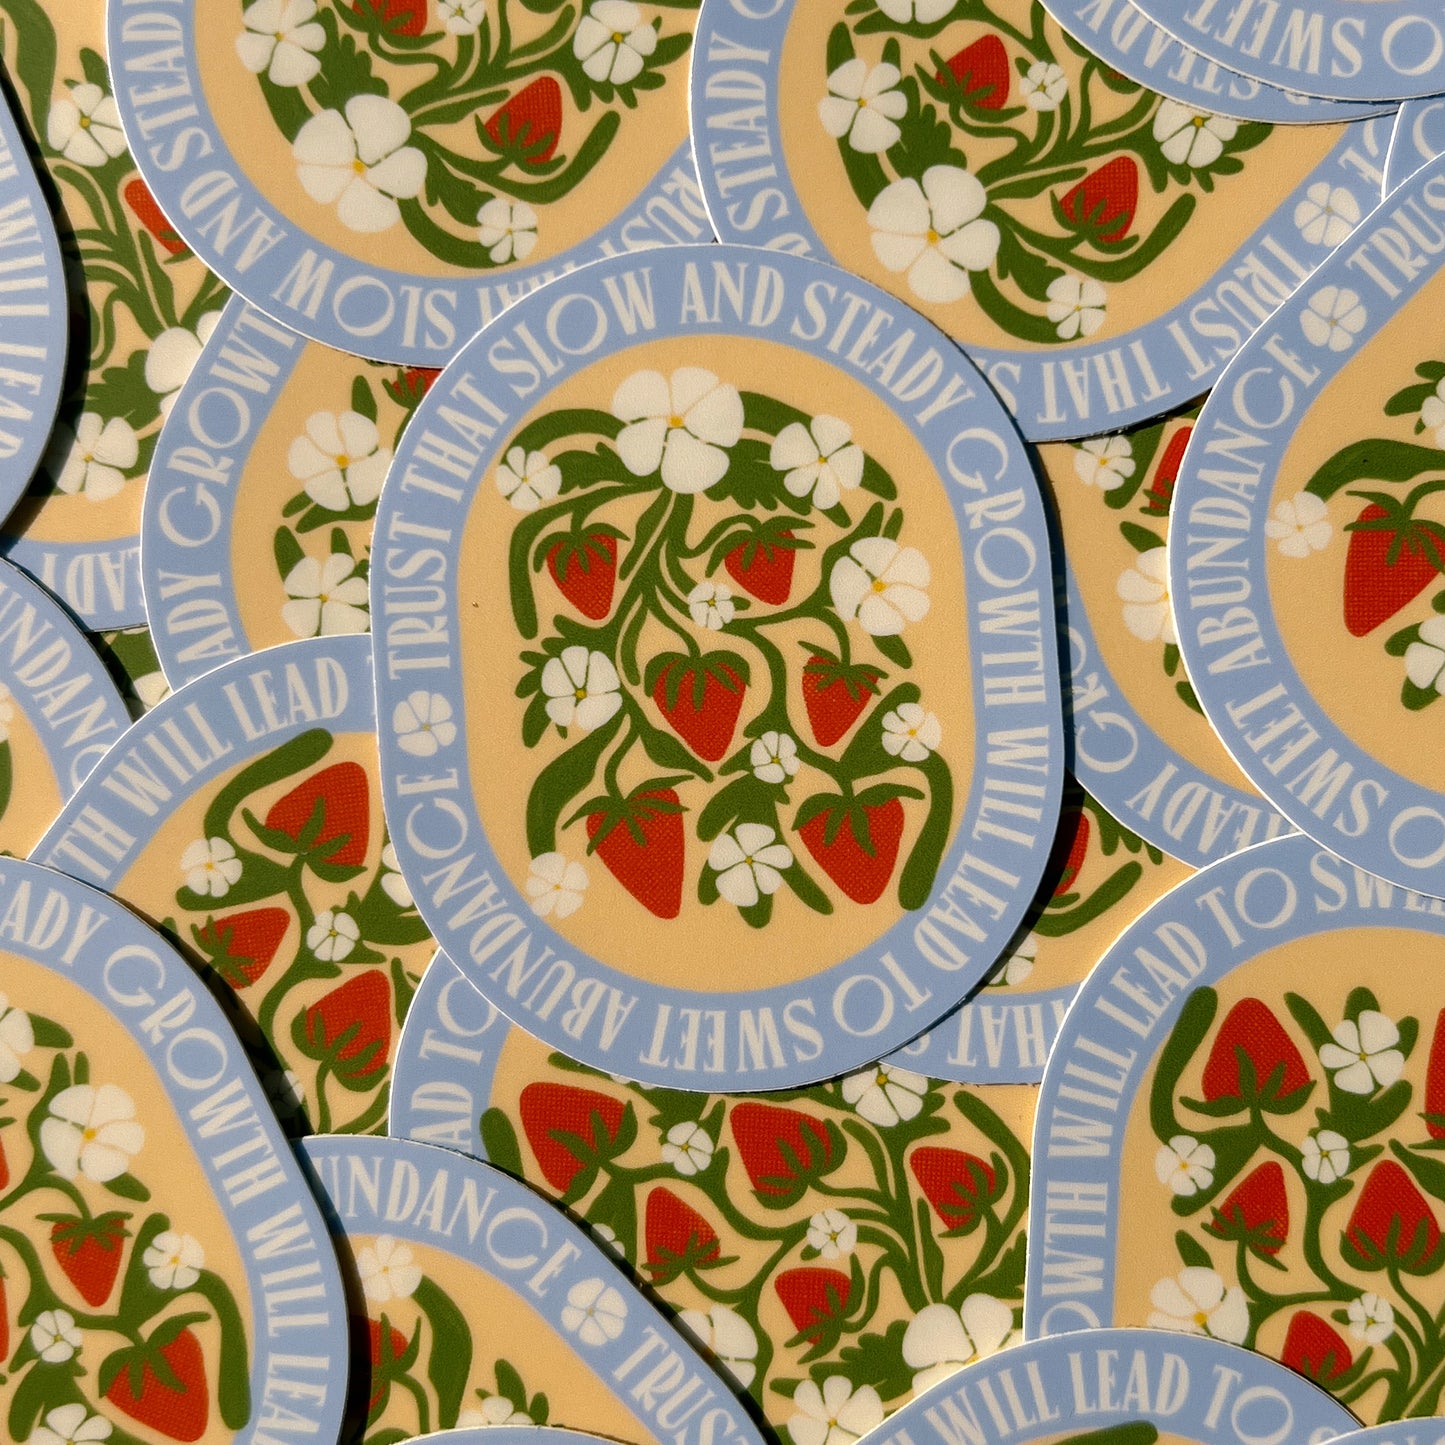 Strawberry Abundance Quote - Vinyl Sticker